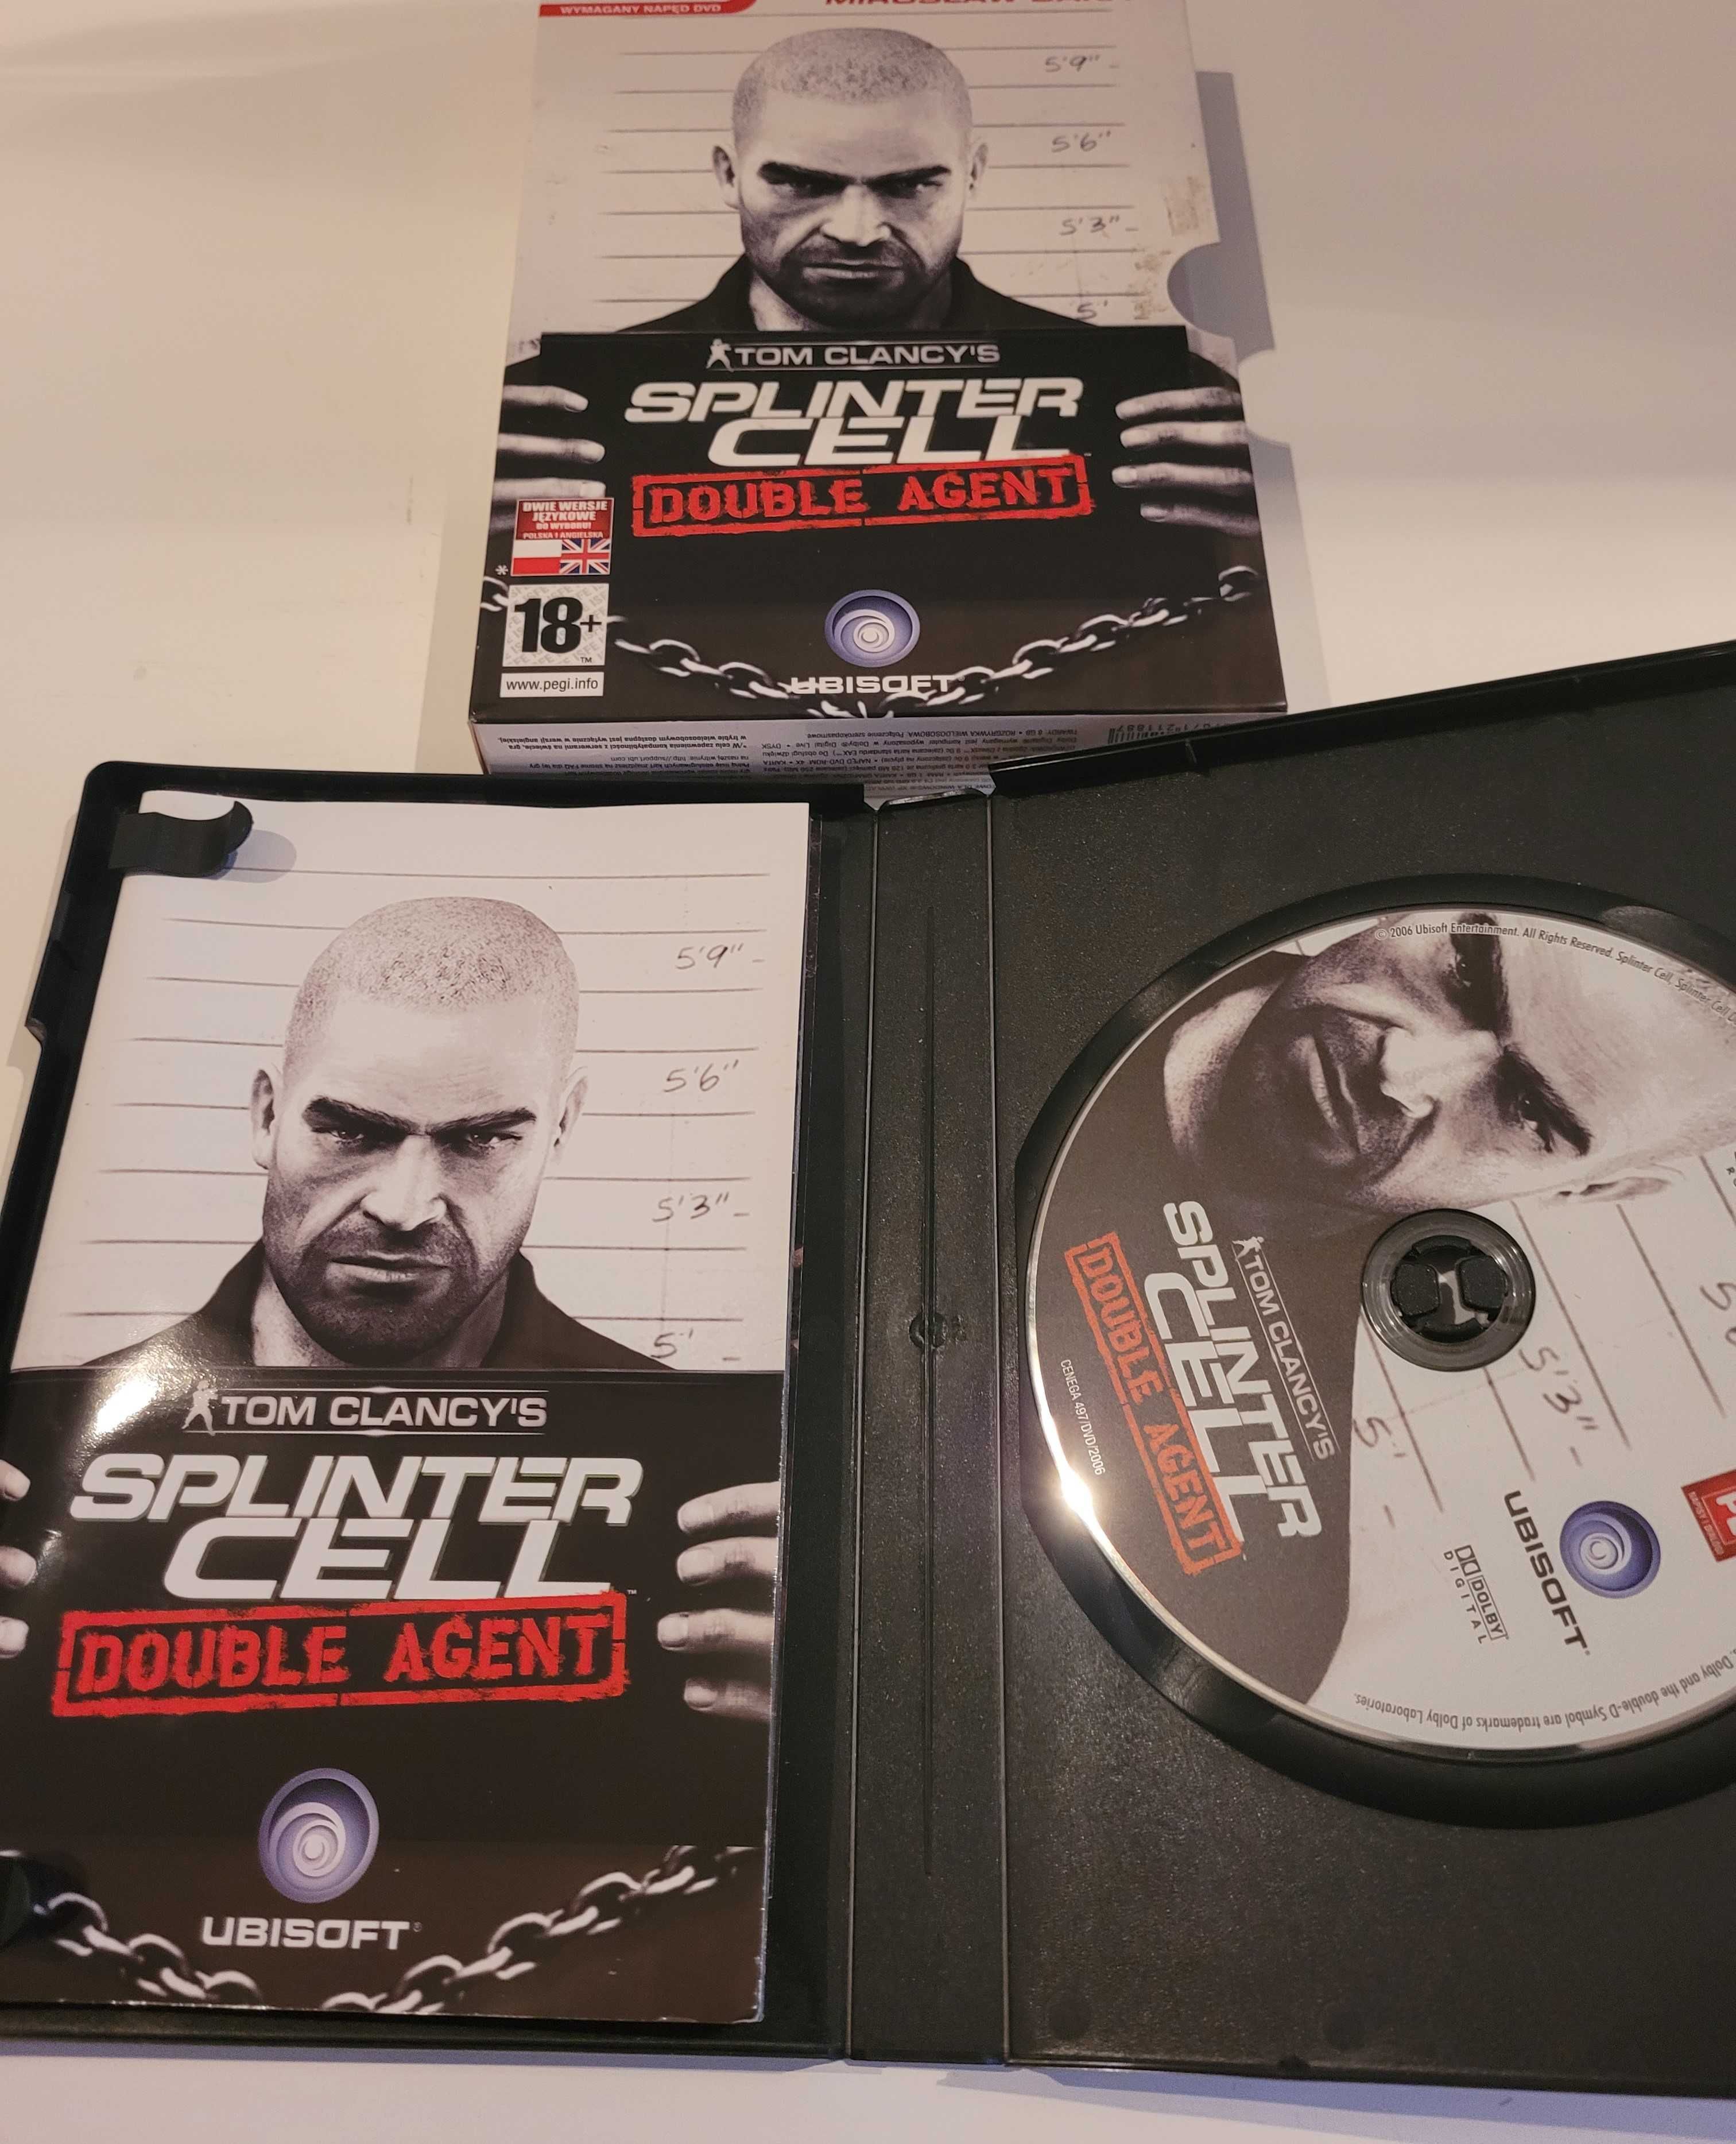 Tom Clancy Splinter Cell - Double Agent premierowe wydanie PC